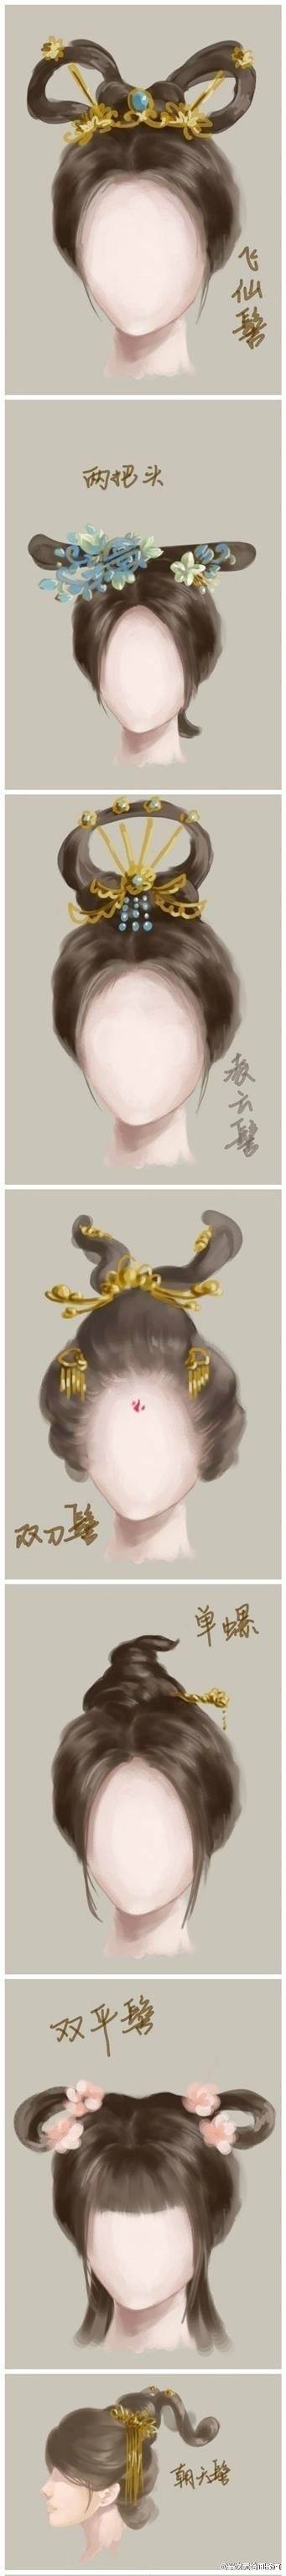 绘画参考# 嗷ヽ(*0766`)古代女子发型50例,宫廷牡丹头,民间双平